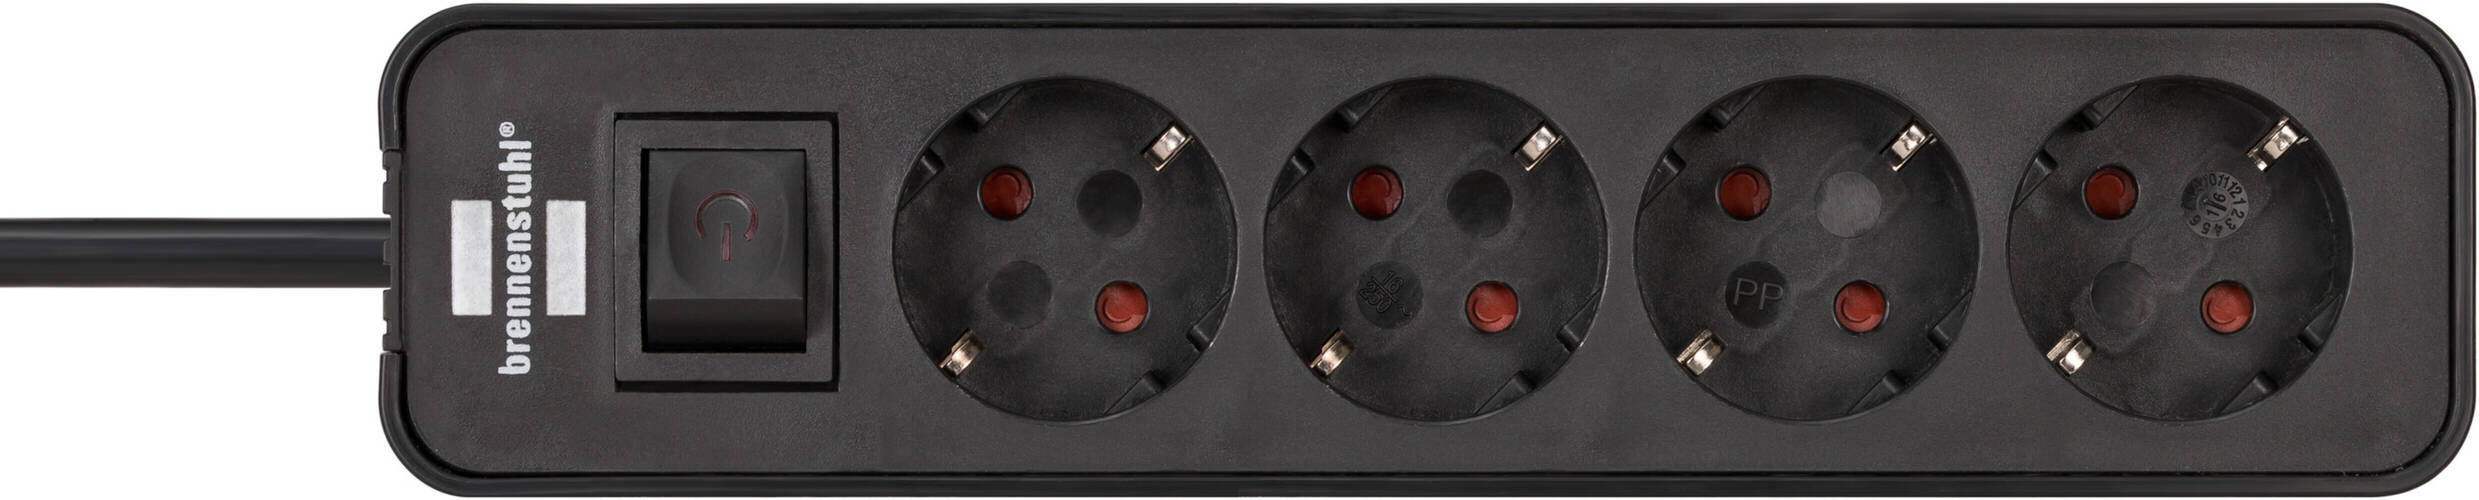 Schwarze Brennenstuhl Steckdose mit 4-fach Verteiler für sichere Stromversorgung - Ecolor Serie